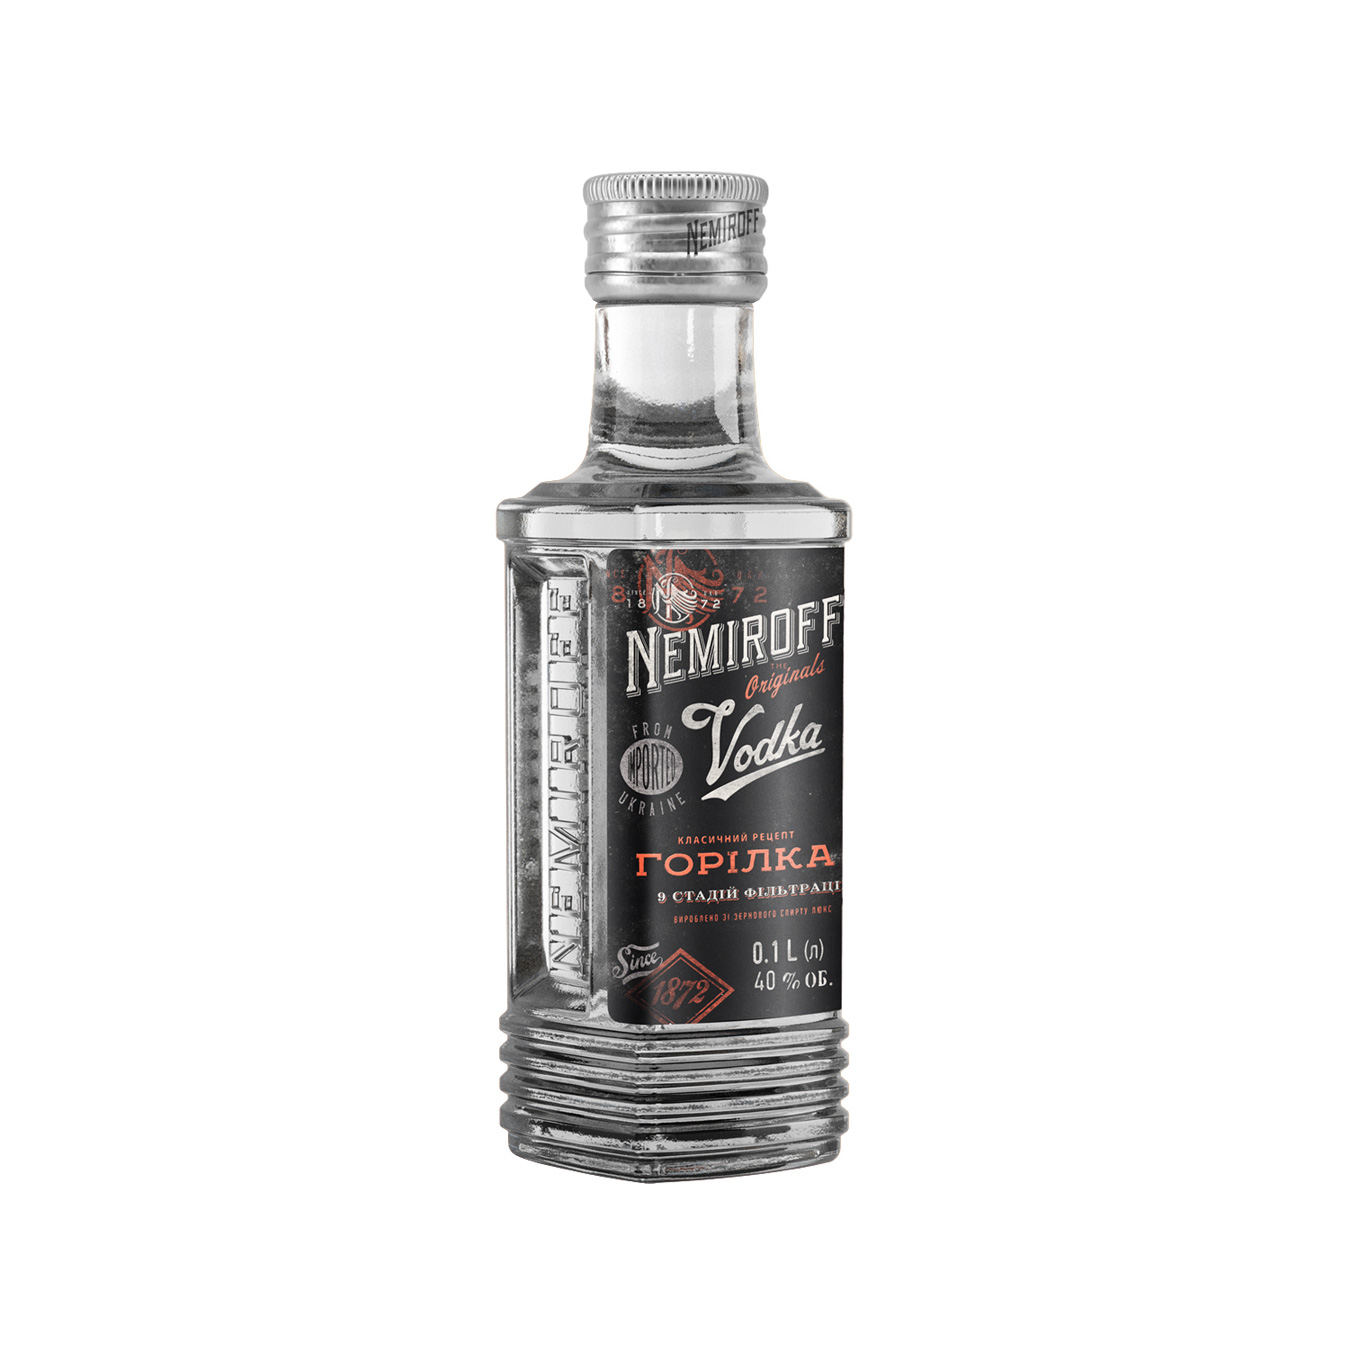 Vodka Nemiroff Shtof Original 40% 0.1 l 3